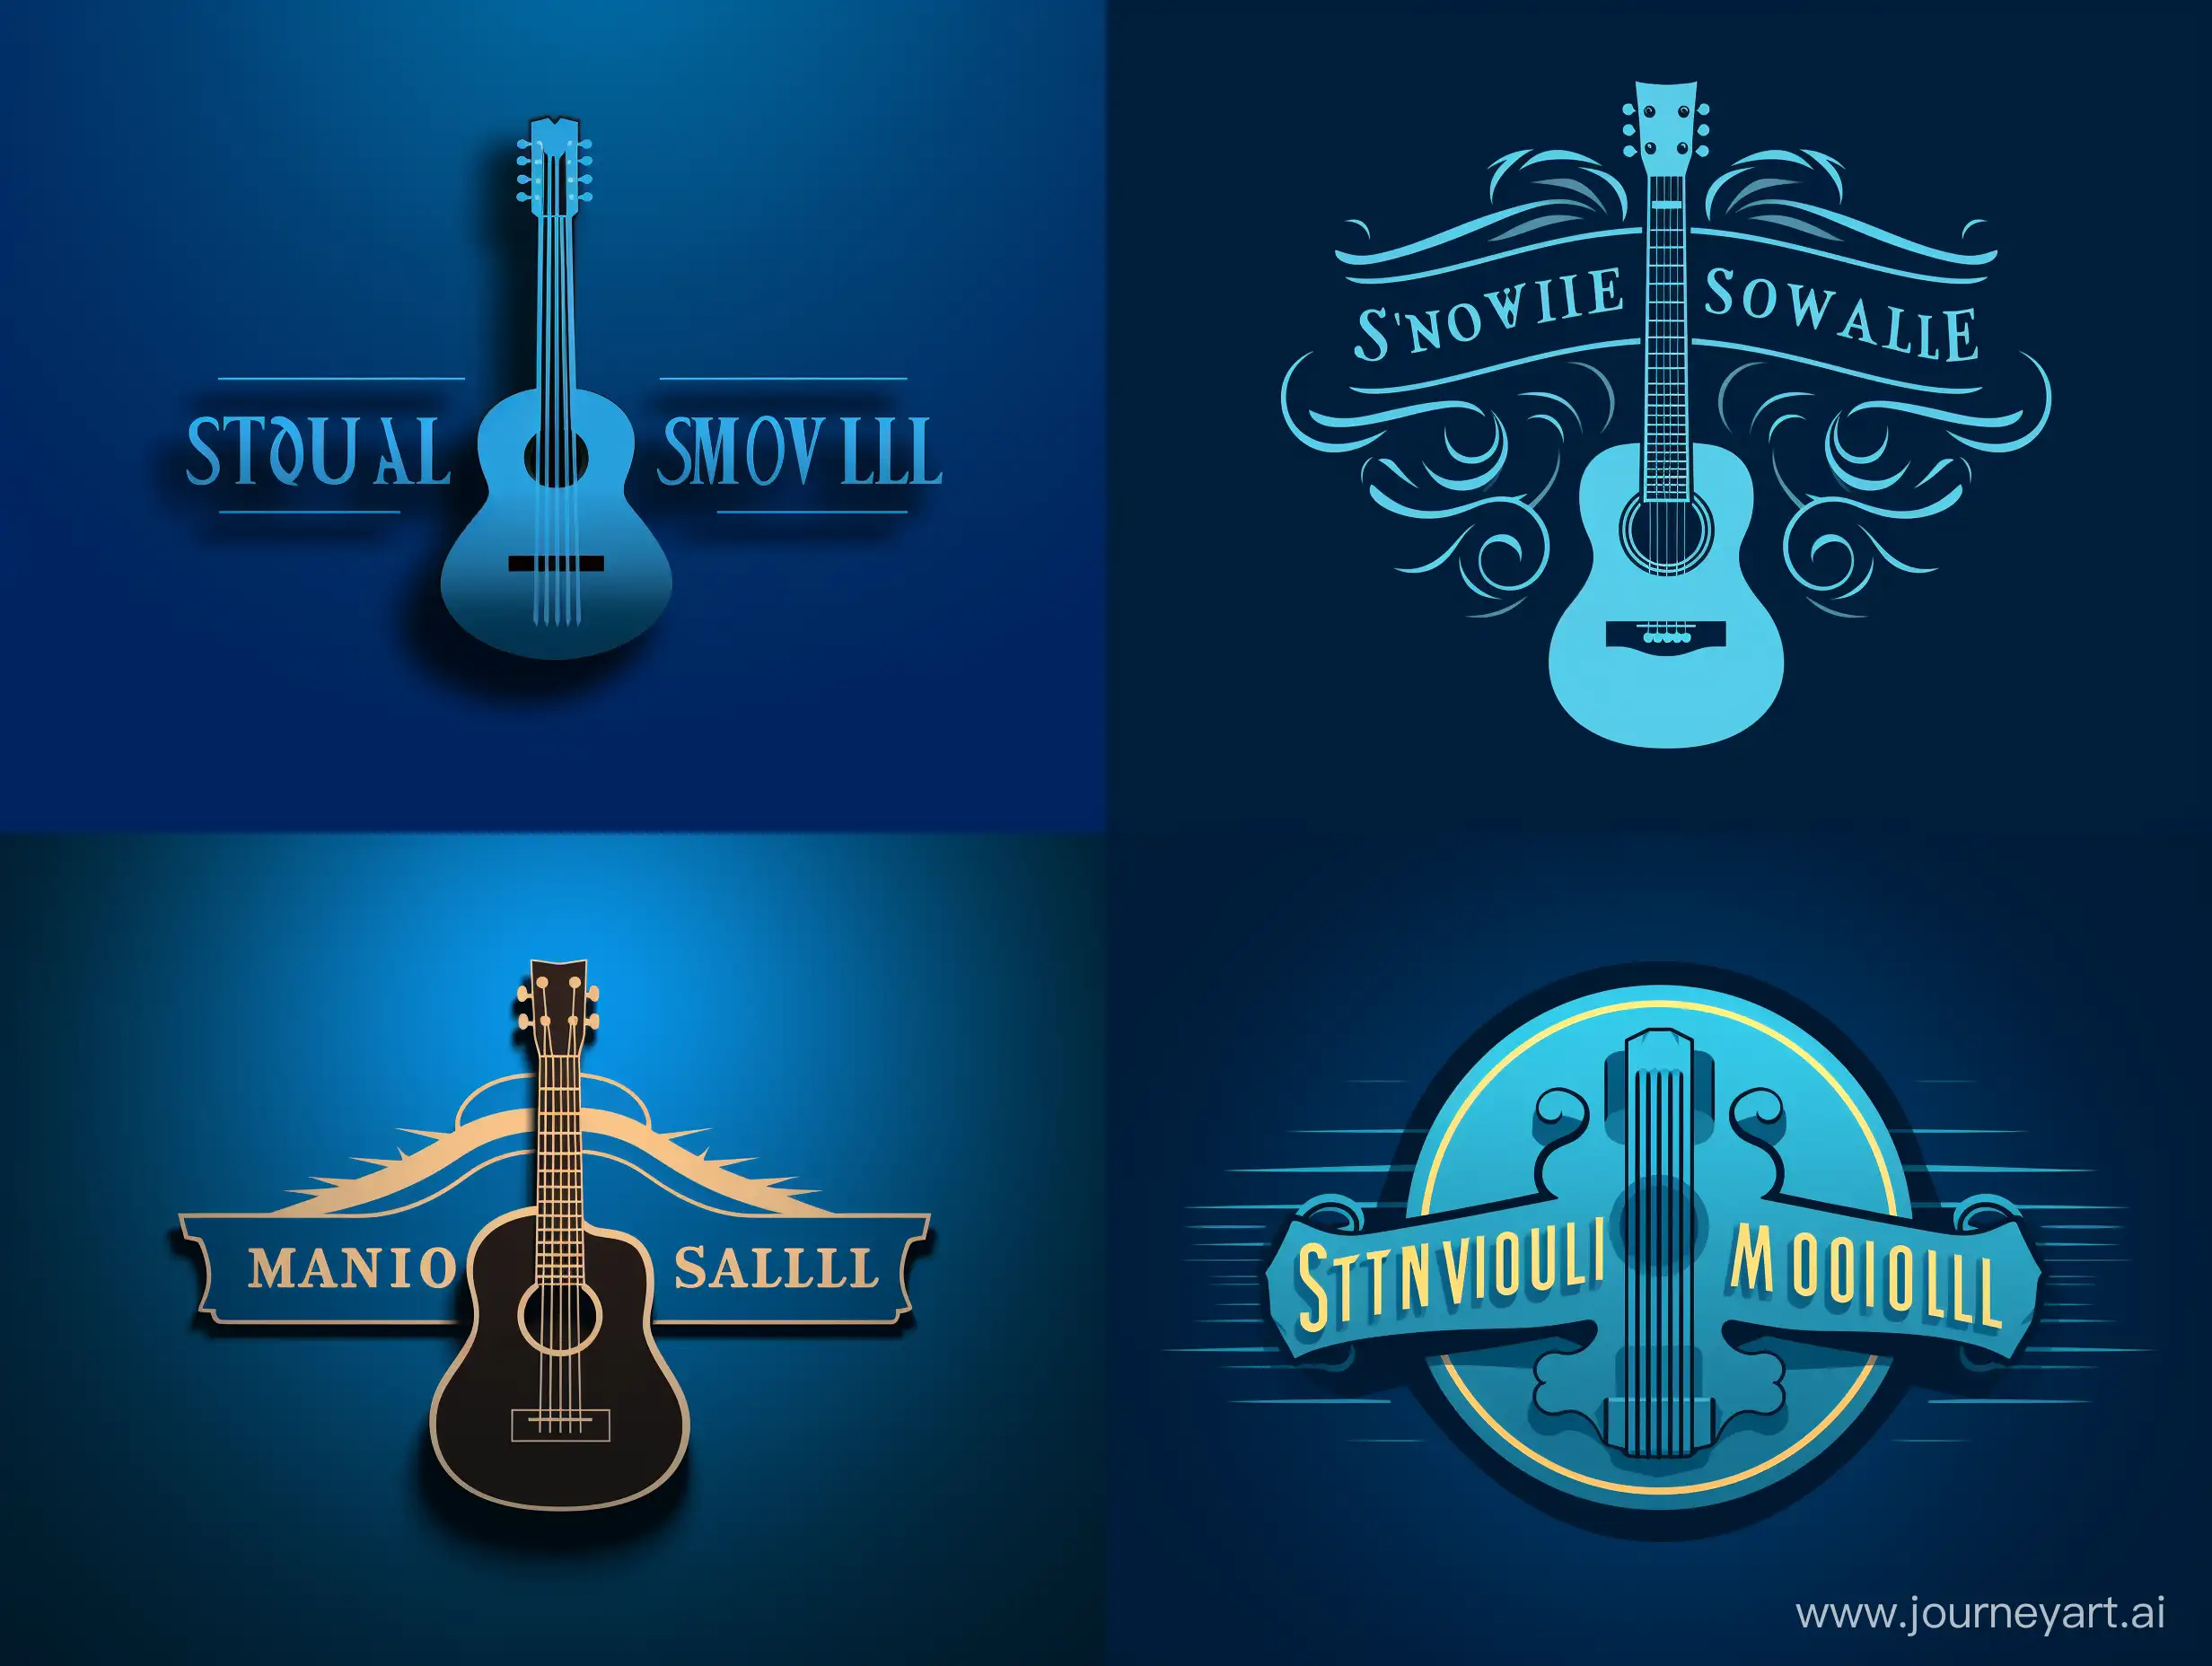 Petit logo monochrome avec ombre, centré sur fond pleine page couleur bleue, guitare acoustique, ukulélé, leçon, tutoriel